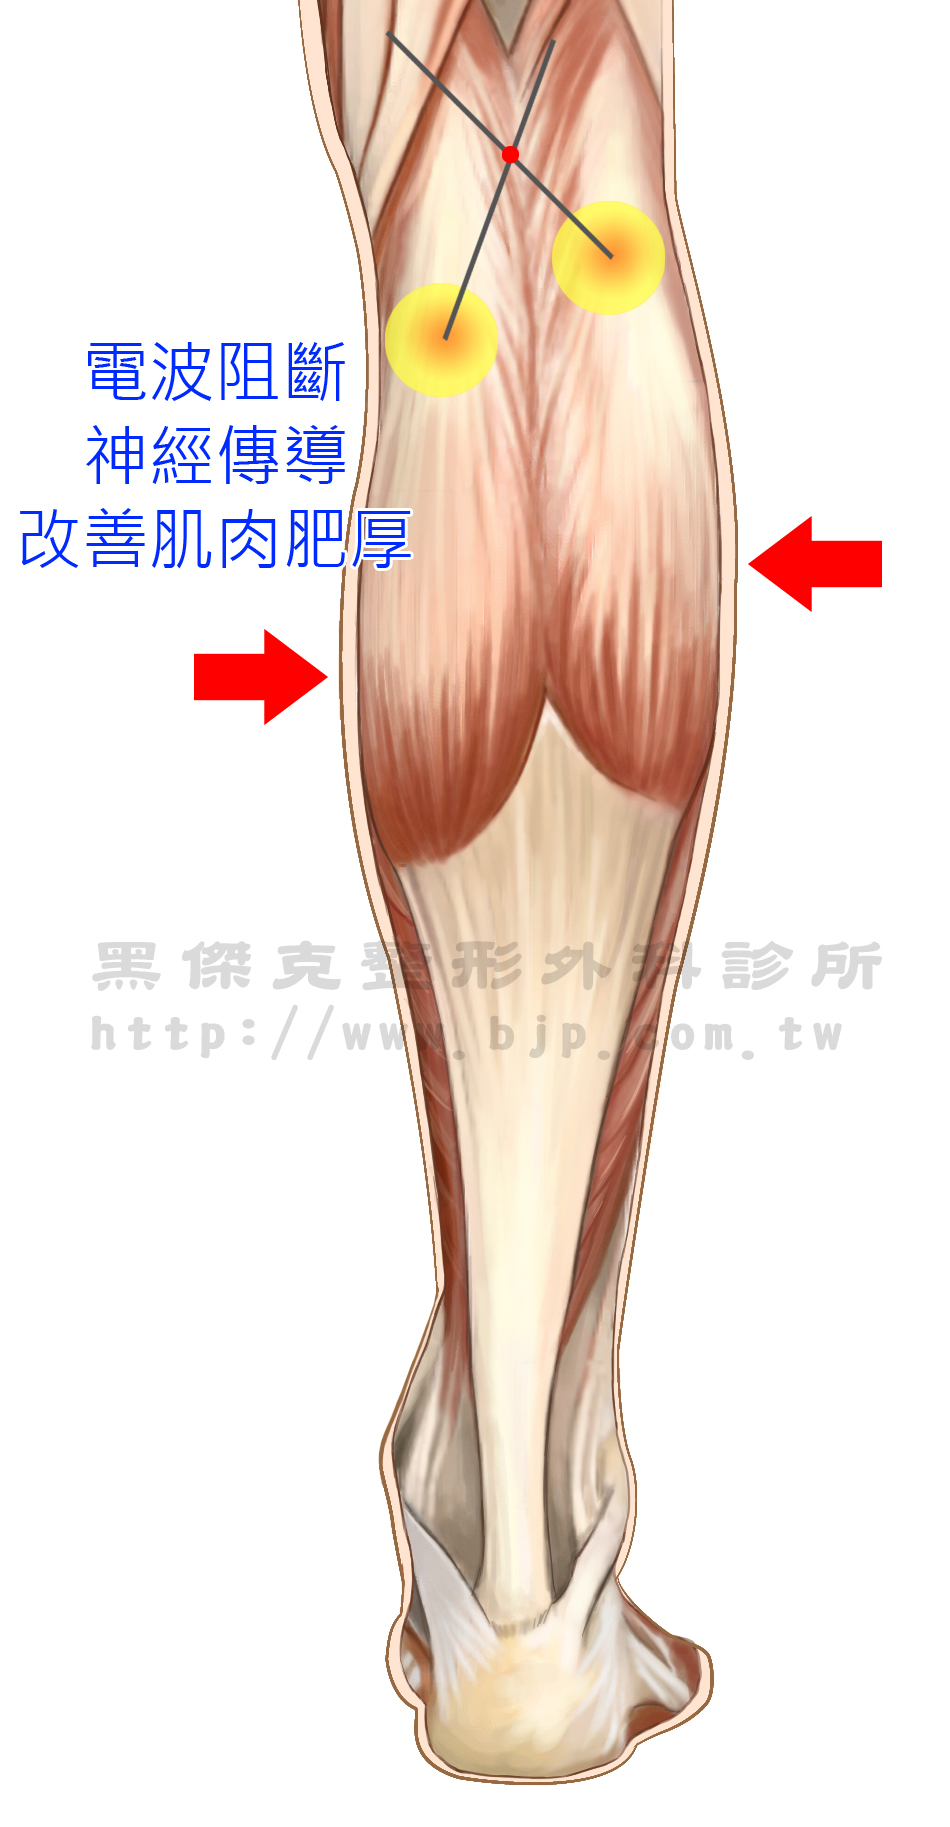 電波纖腿，被阻斷的神經所支配的肌肉，因為無法接受神經刺激而逐漸萎縮，達到瘦小腿的目的。